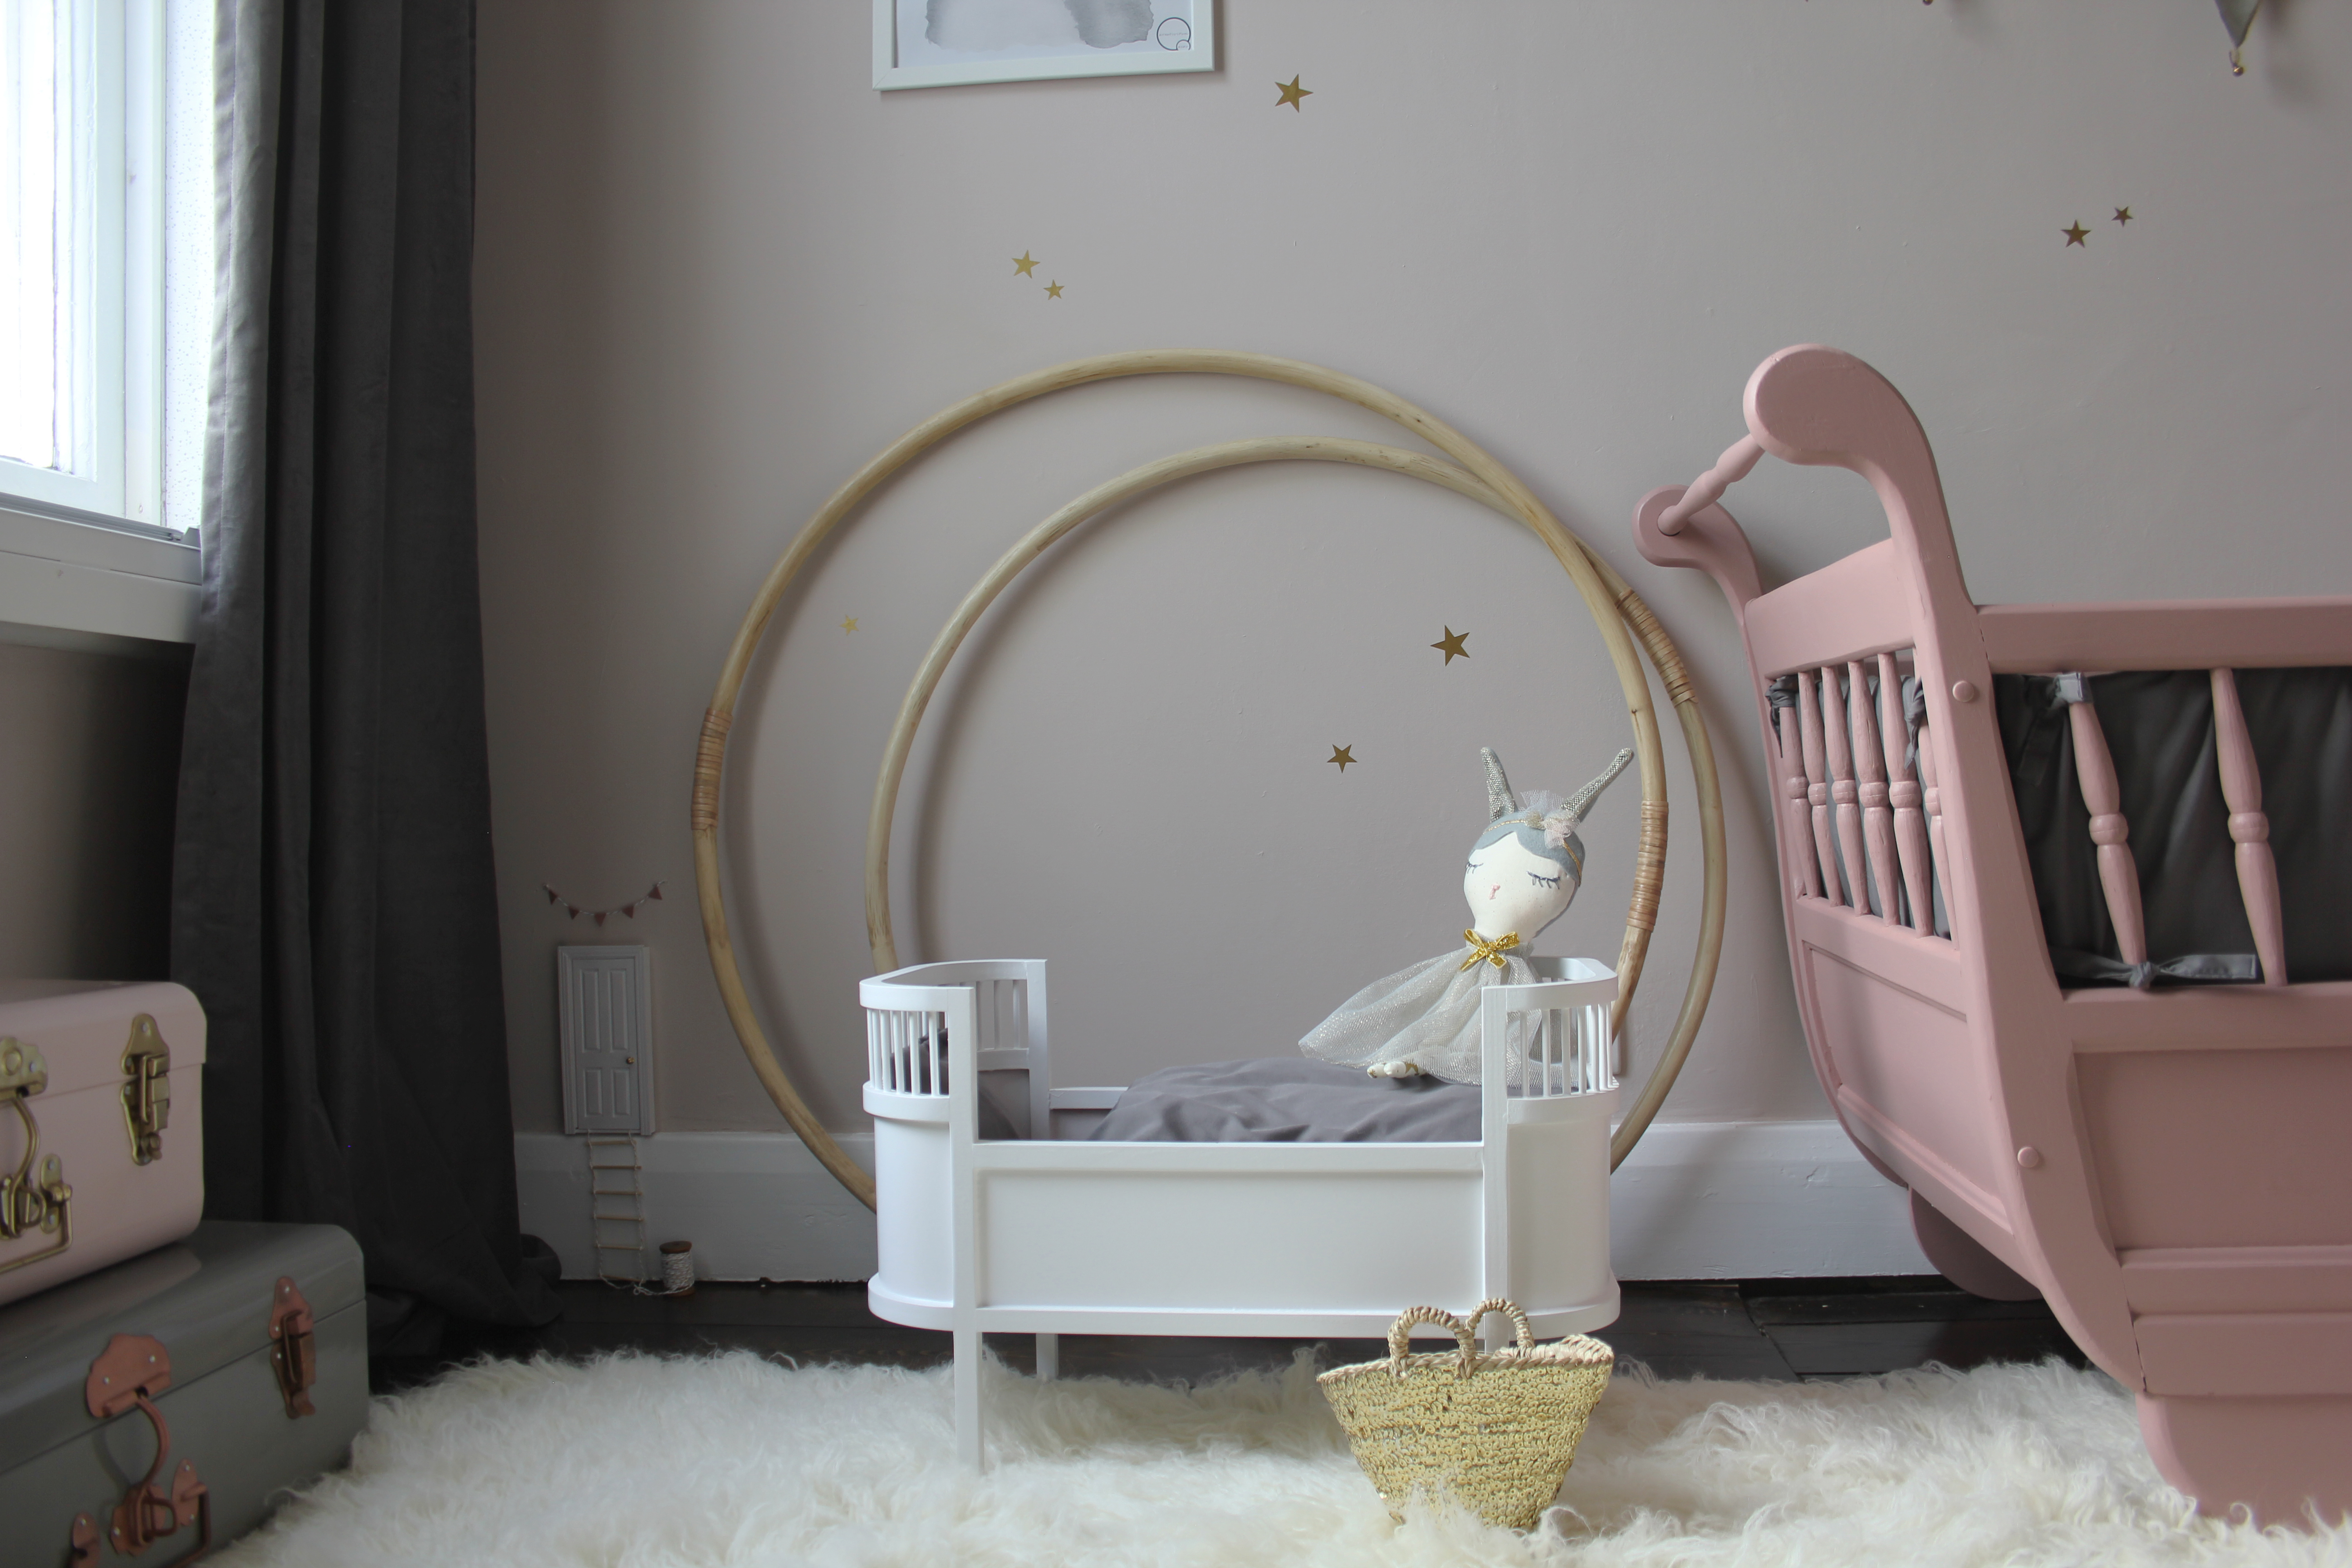 Preciously Me blog : DIY Adorable Fairy Door using a simple dollhouse door